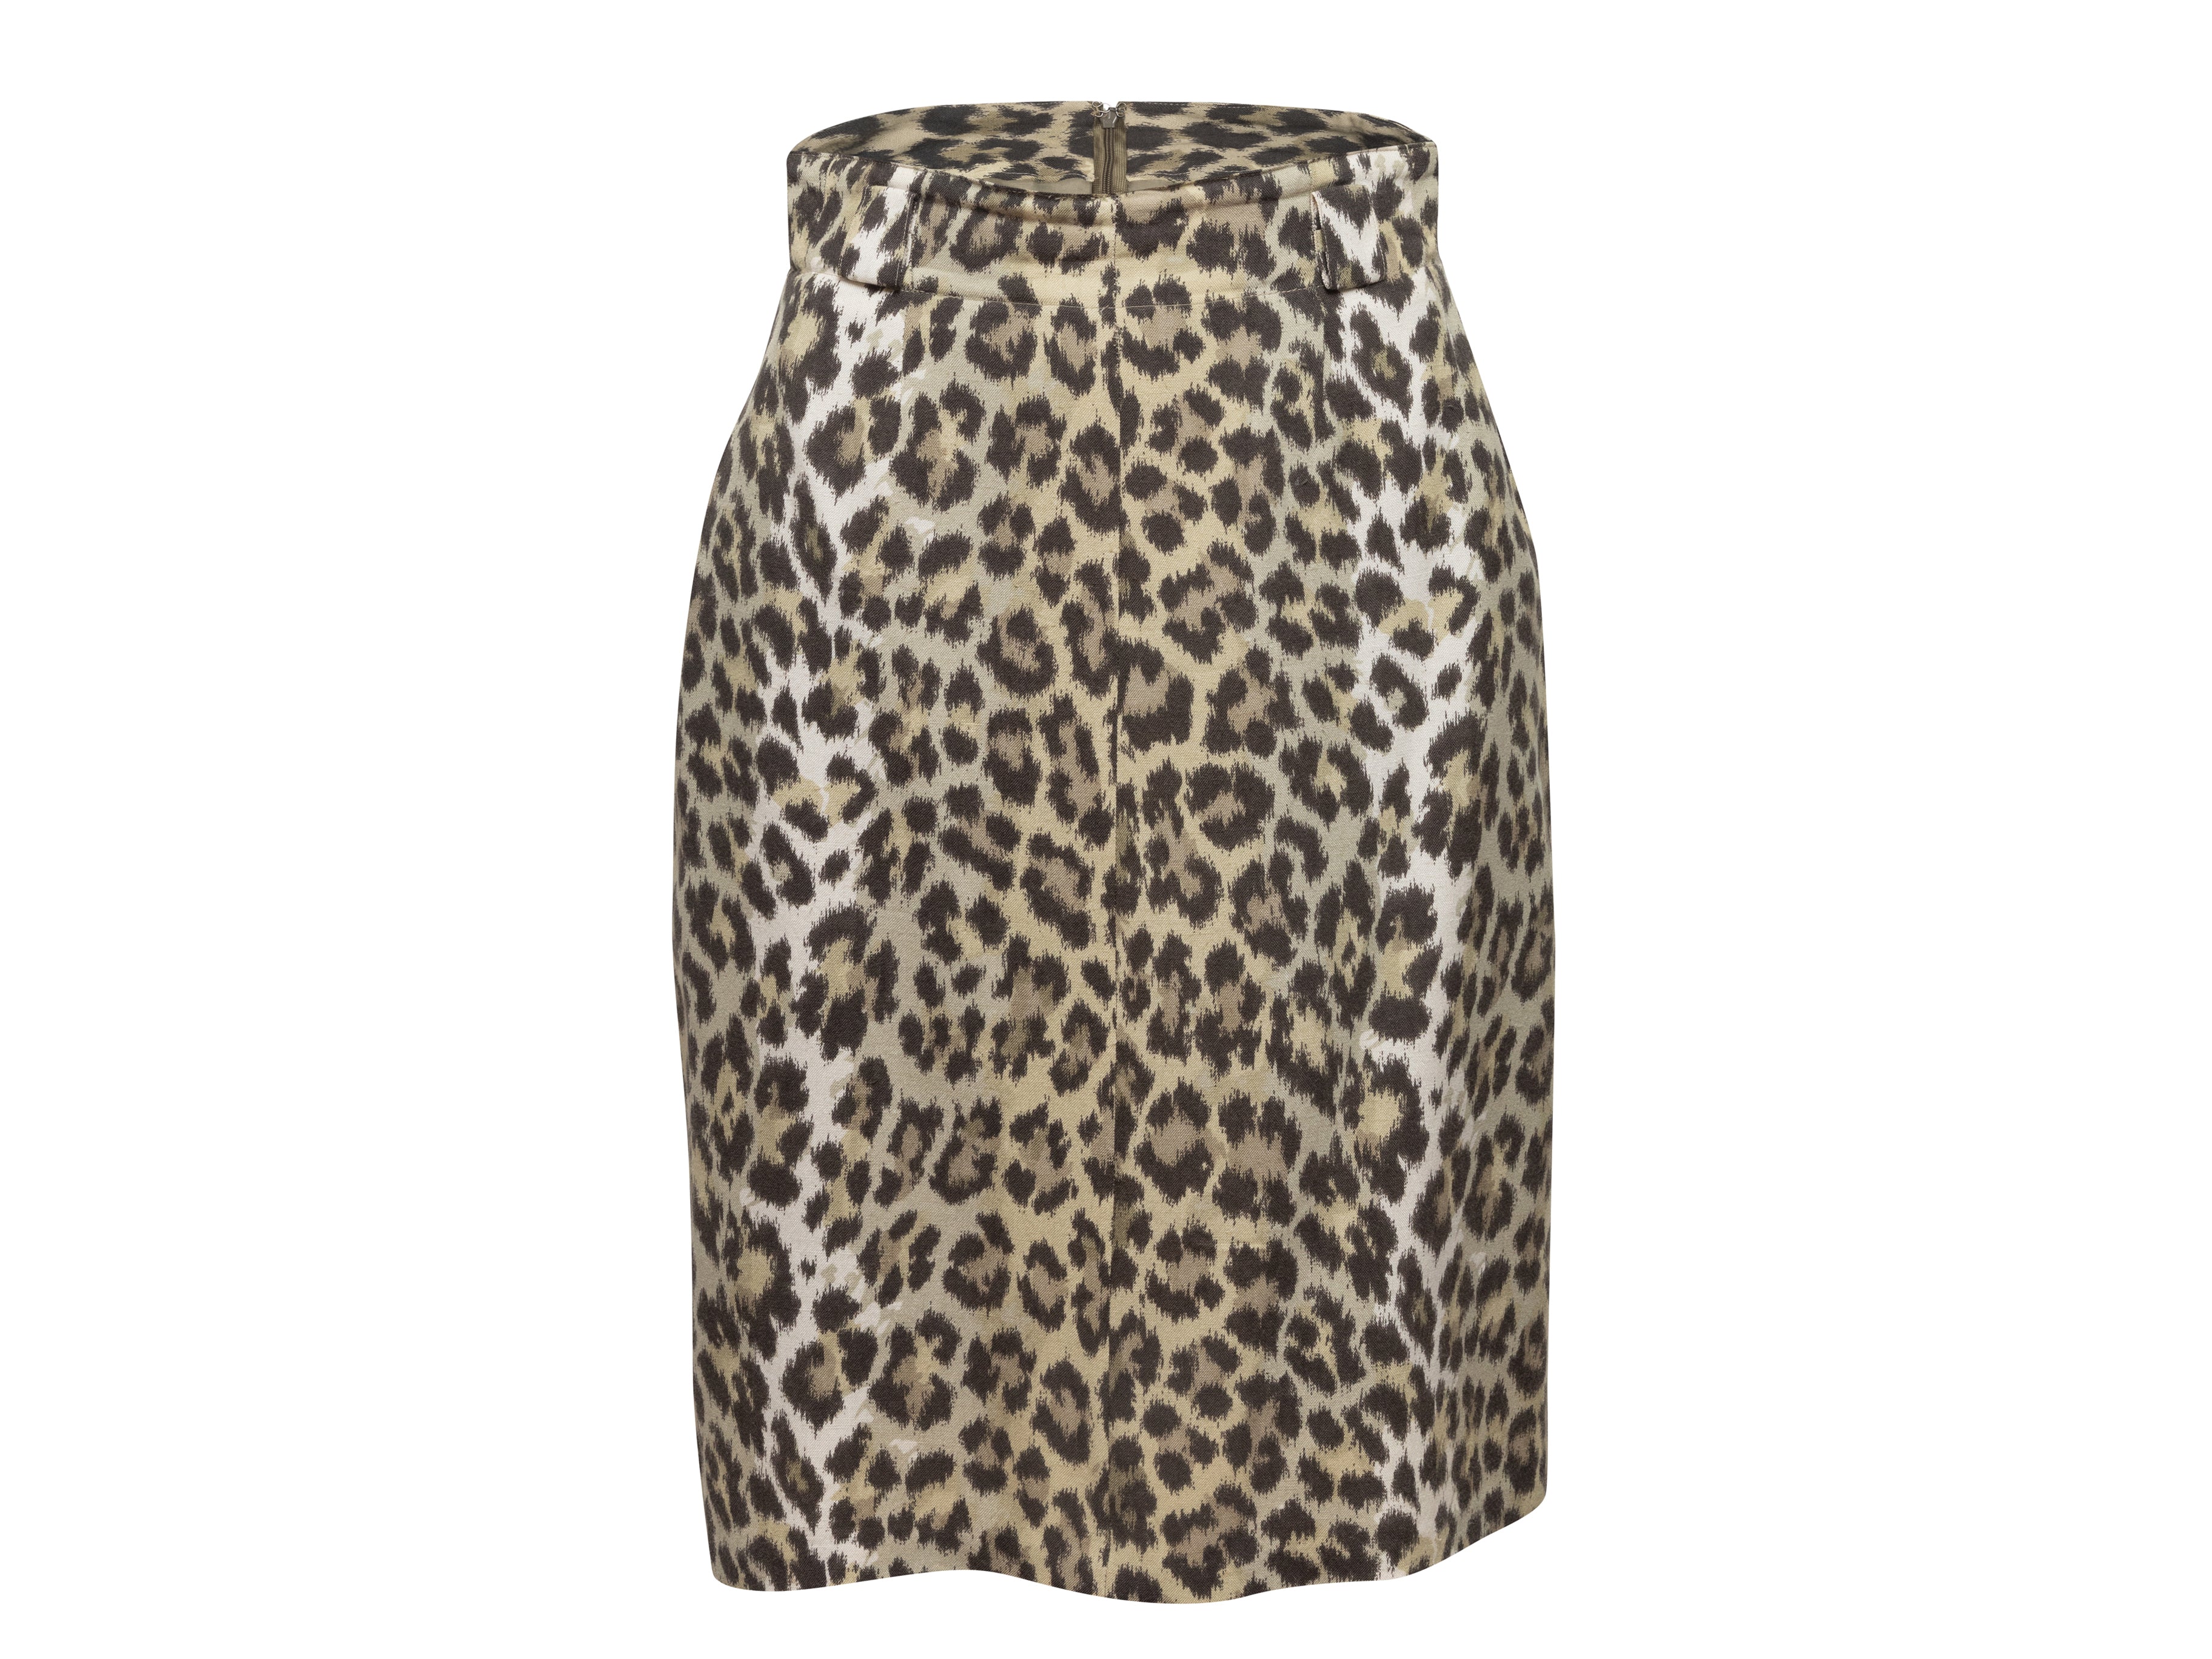 Tan & Black Leopard Print Skirt Suit